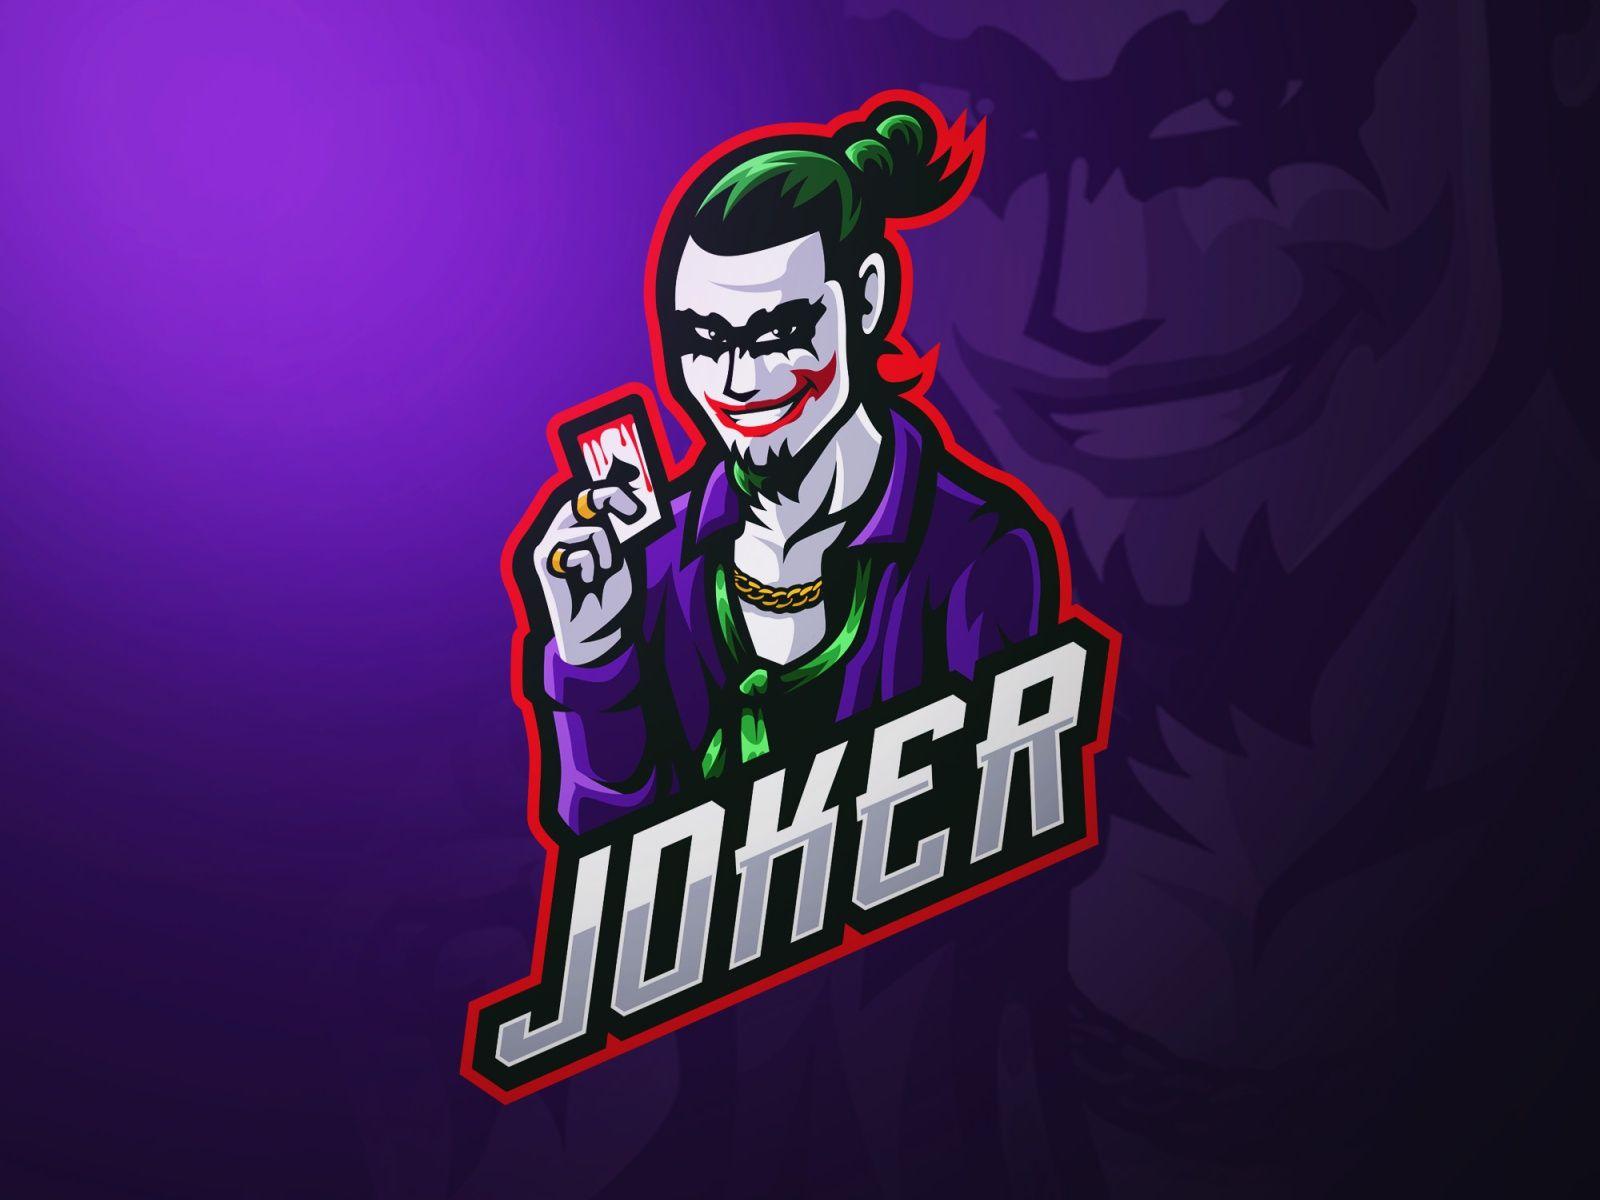 Pubg Joker Wallpapers - Top Free Pubg Joker Backgrounds - WallpaperAccess